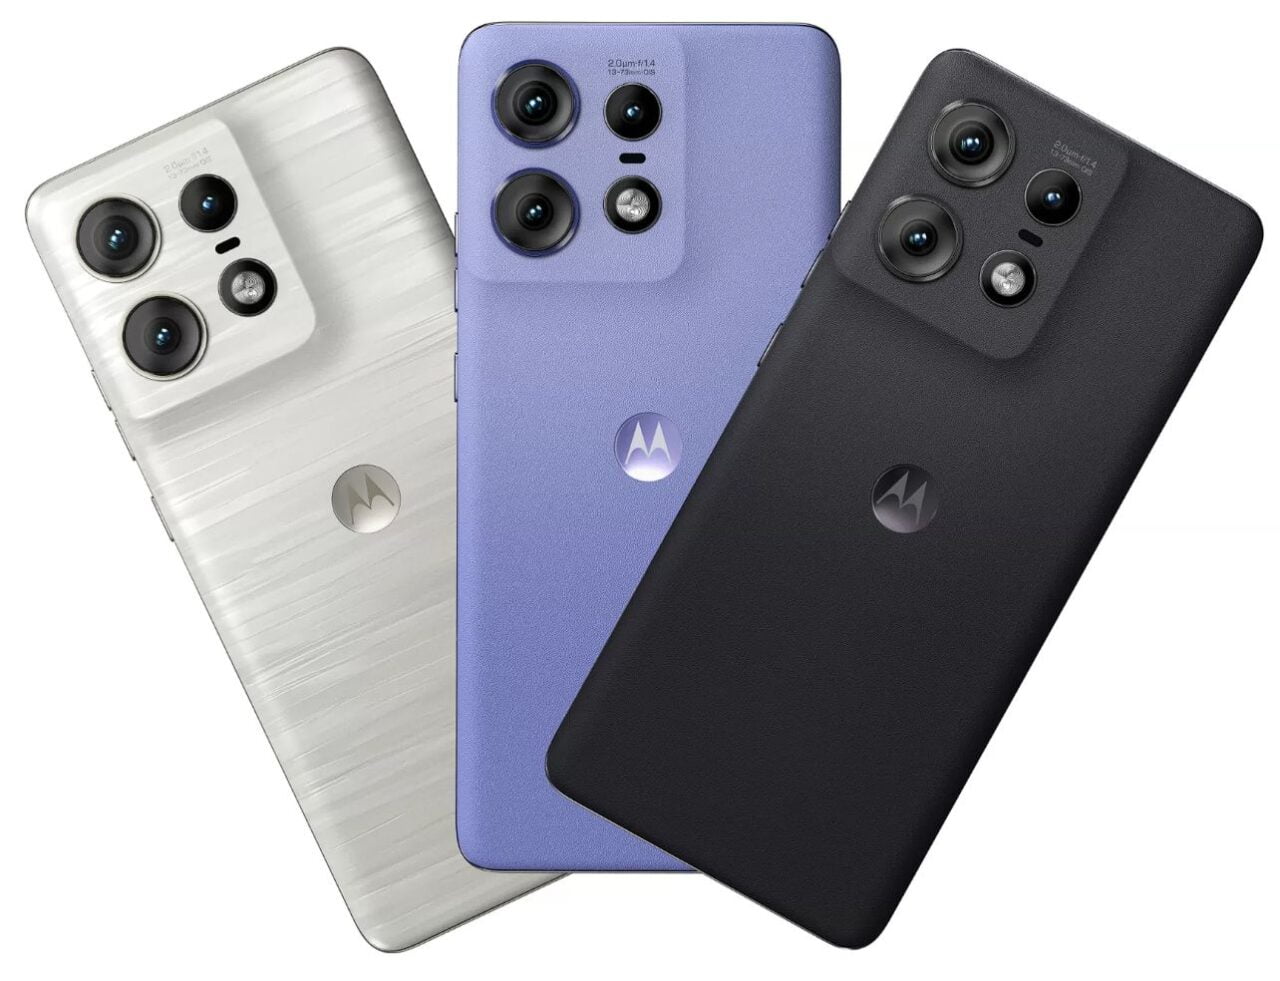 Trzy smartfony marki Motorola układane diagonalnie, z aparatem o potrójnym obiektywie, w kolorach białym, fioletowym i czarnym.